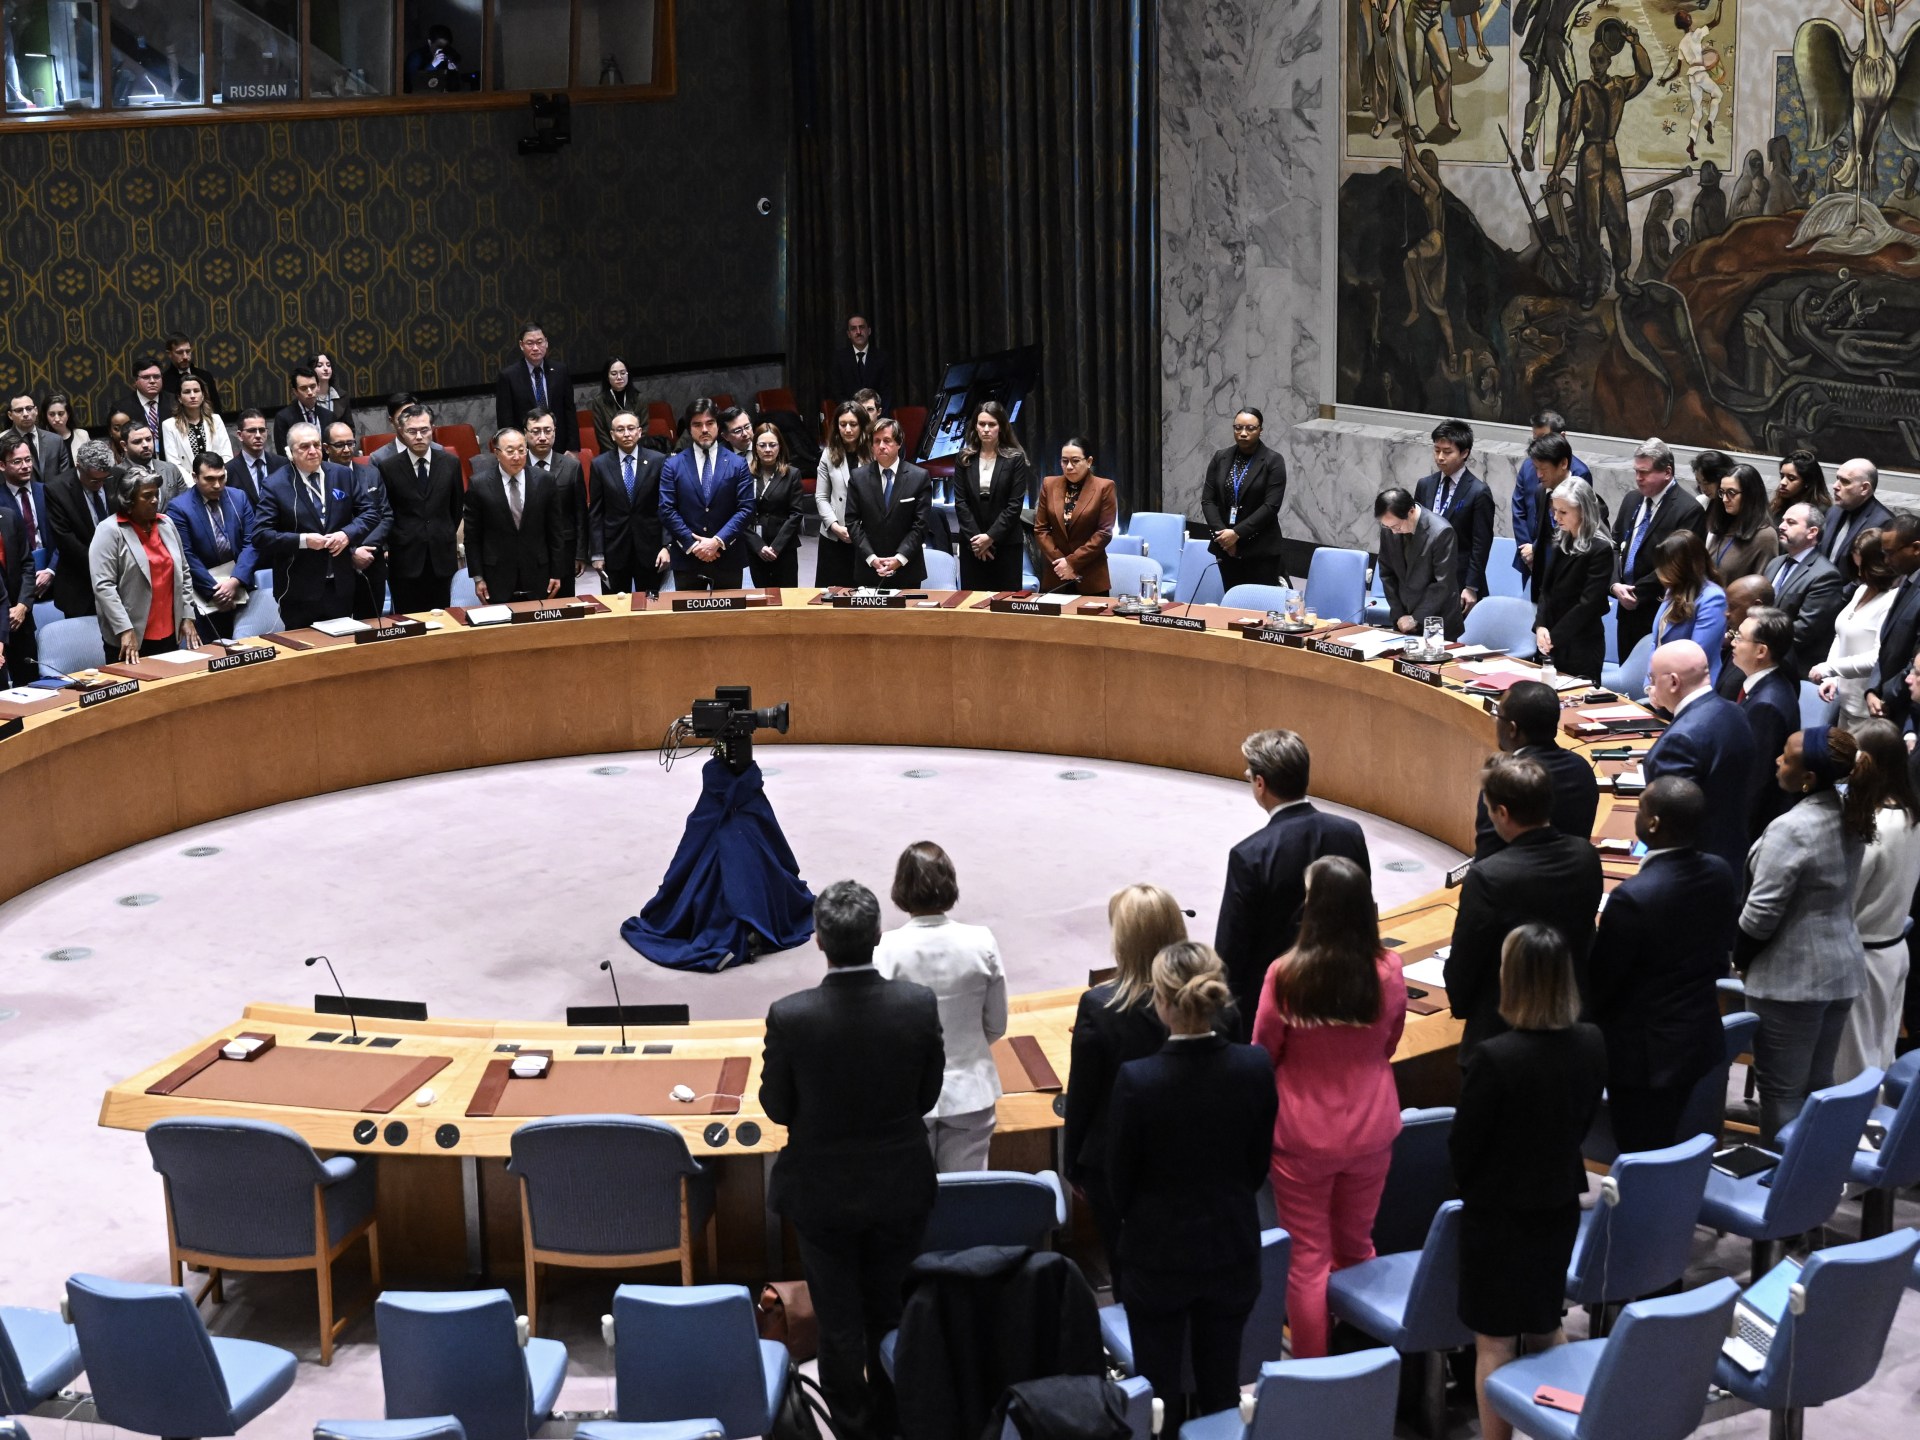 هل يمكن لفلسطين أن تنال العضوية الكاملة في الأمم المتحدة؟ | أخبار – البوكس نيوز